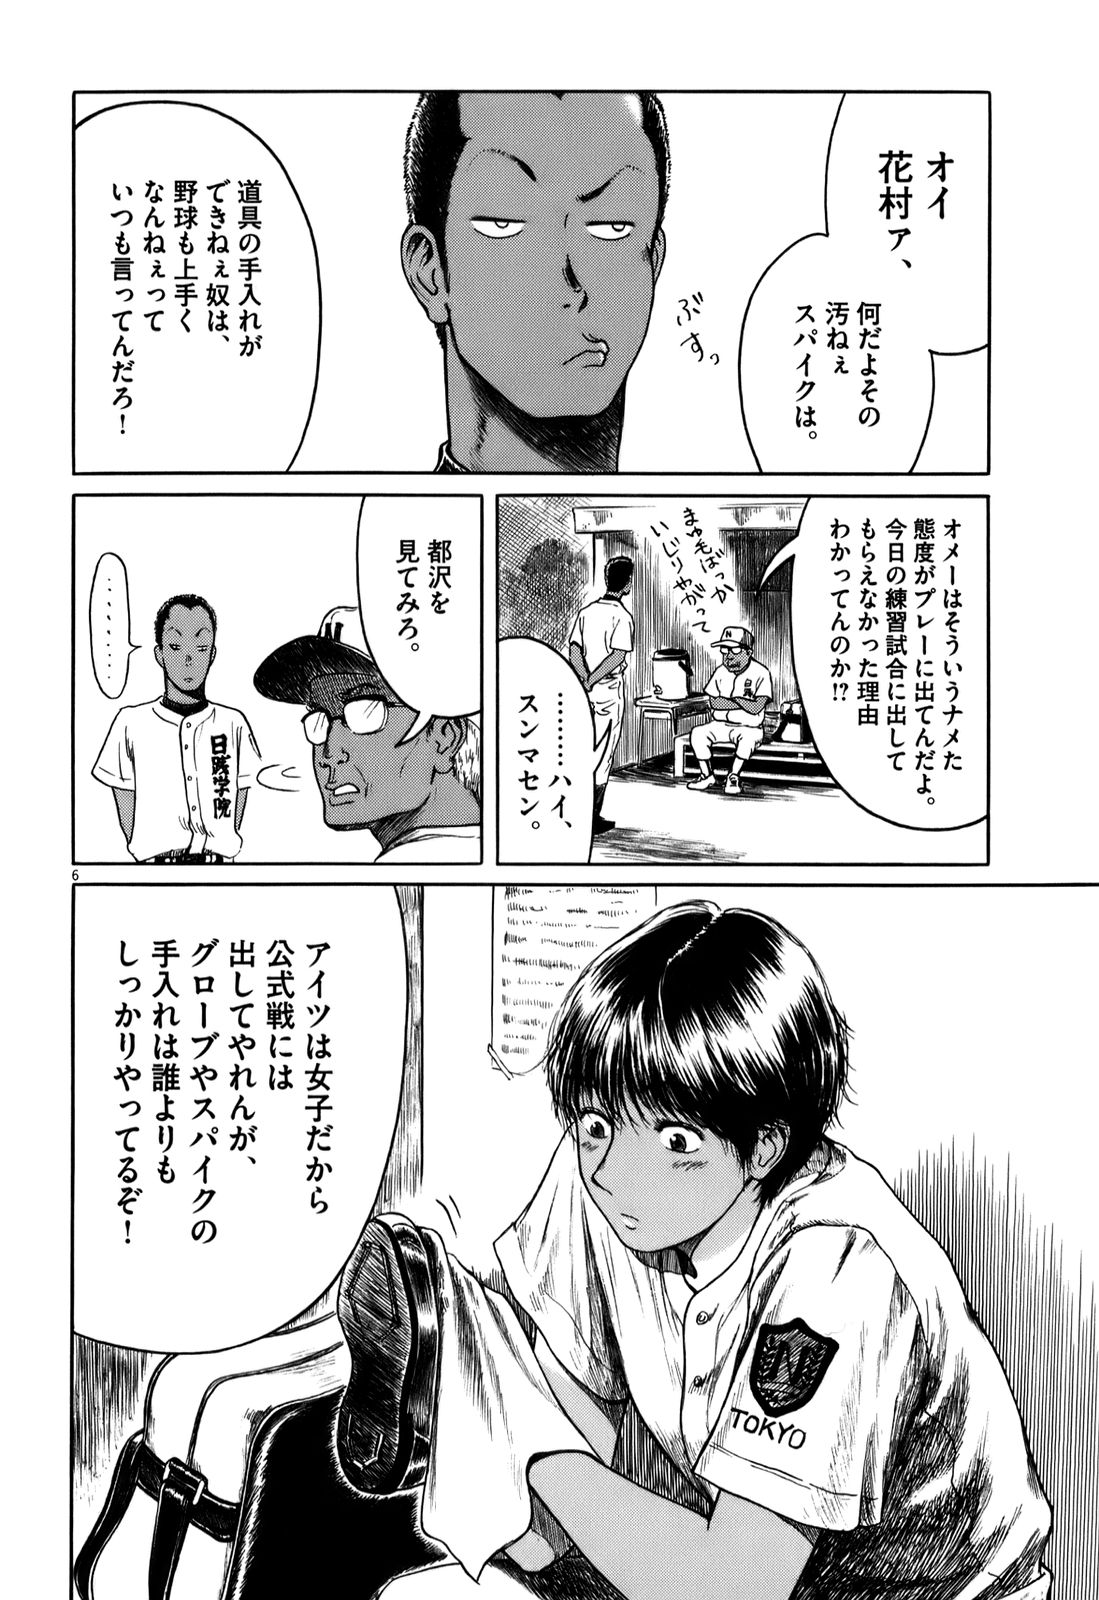 高校球児ザワさん 三島衛里子 を試し読み マンガのジャンルで試し読み